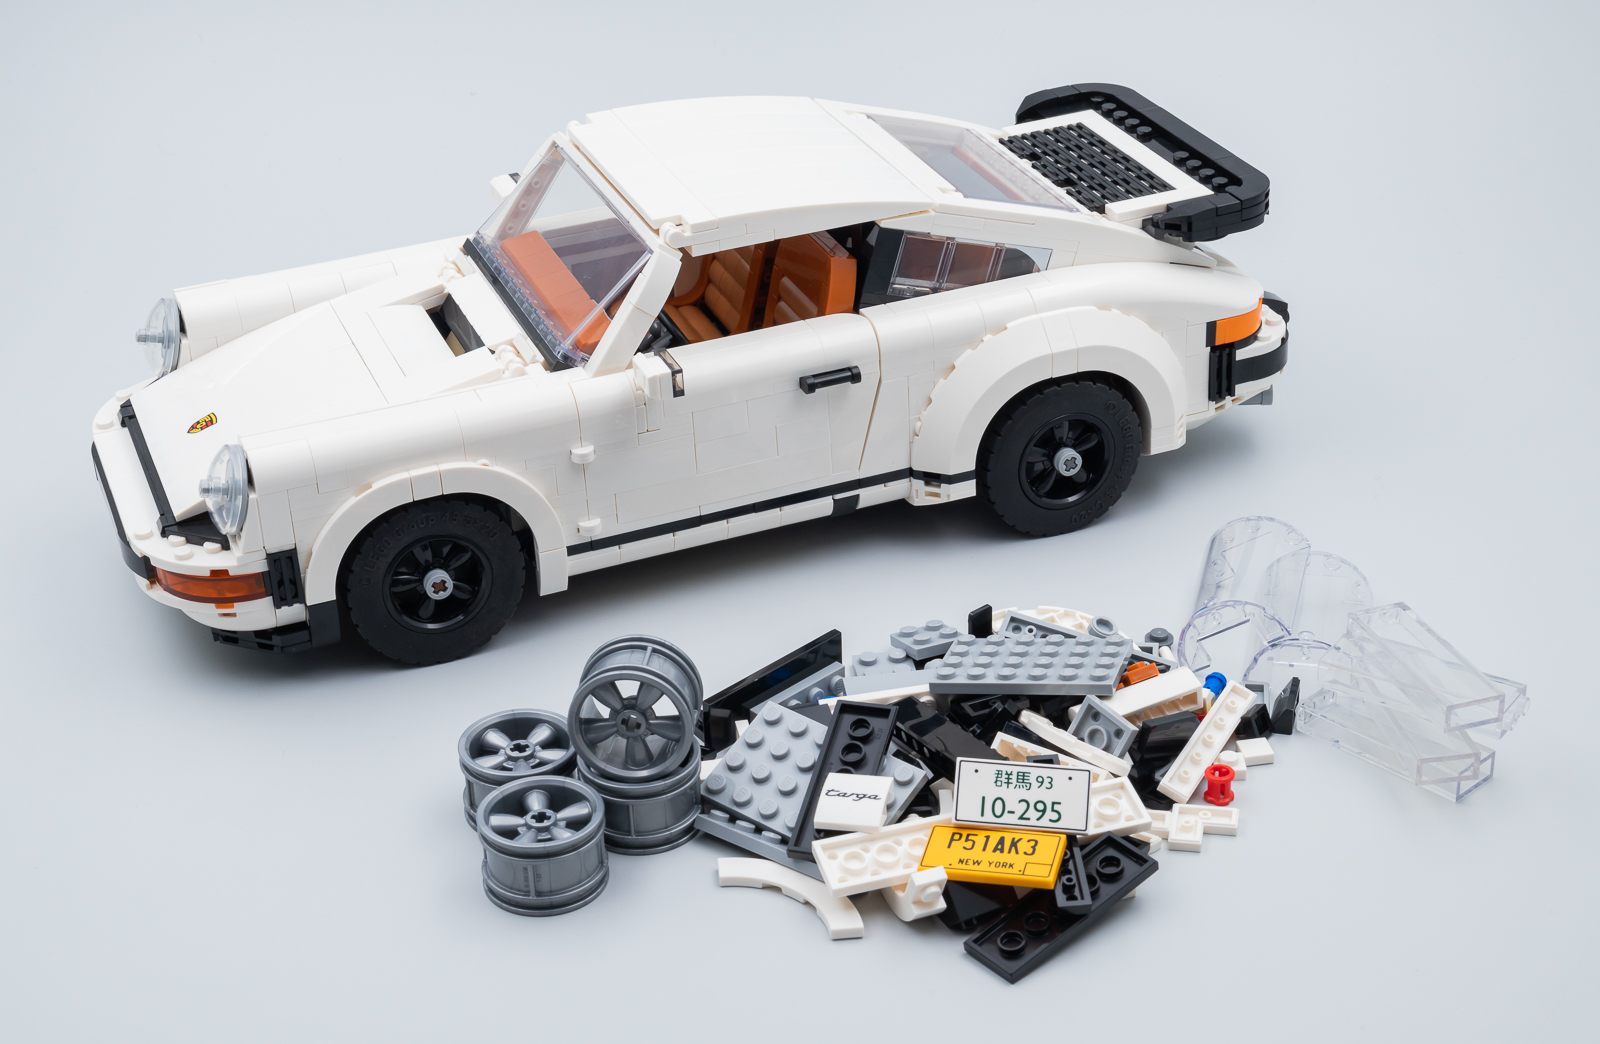 ▻ Review : LEGO Technic 42096 Porsche 911 RSR - HOTH BRICKS